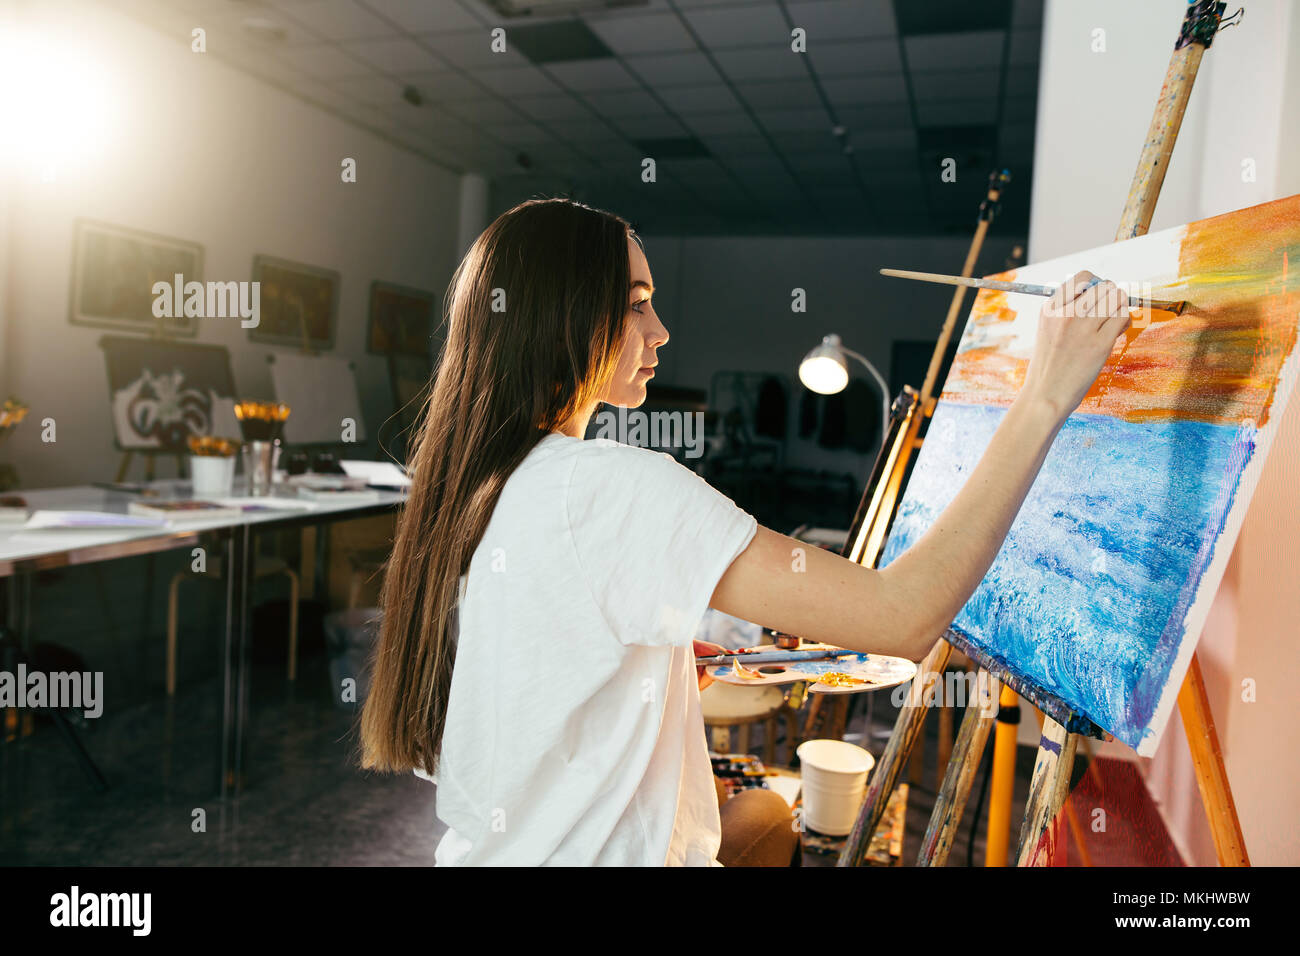 Jeune femme peintre amateur photo dessin sur toile avec des peintures à l'huile dans son atelier Banque D'Images